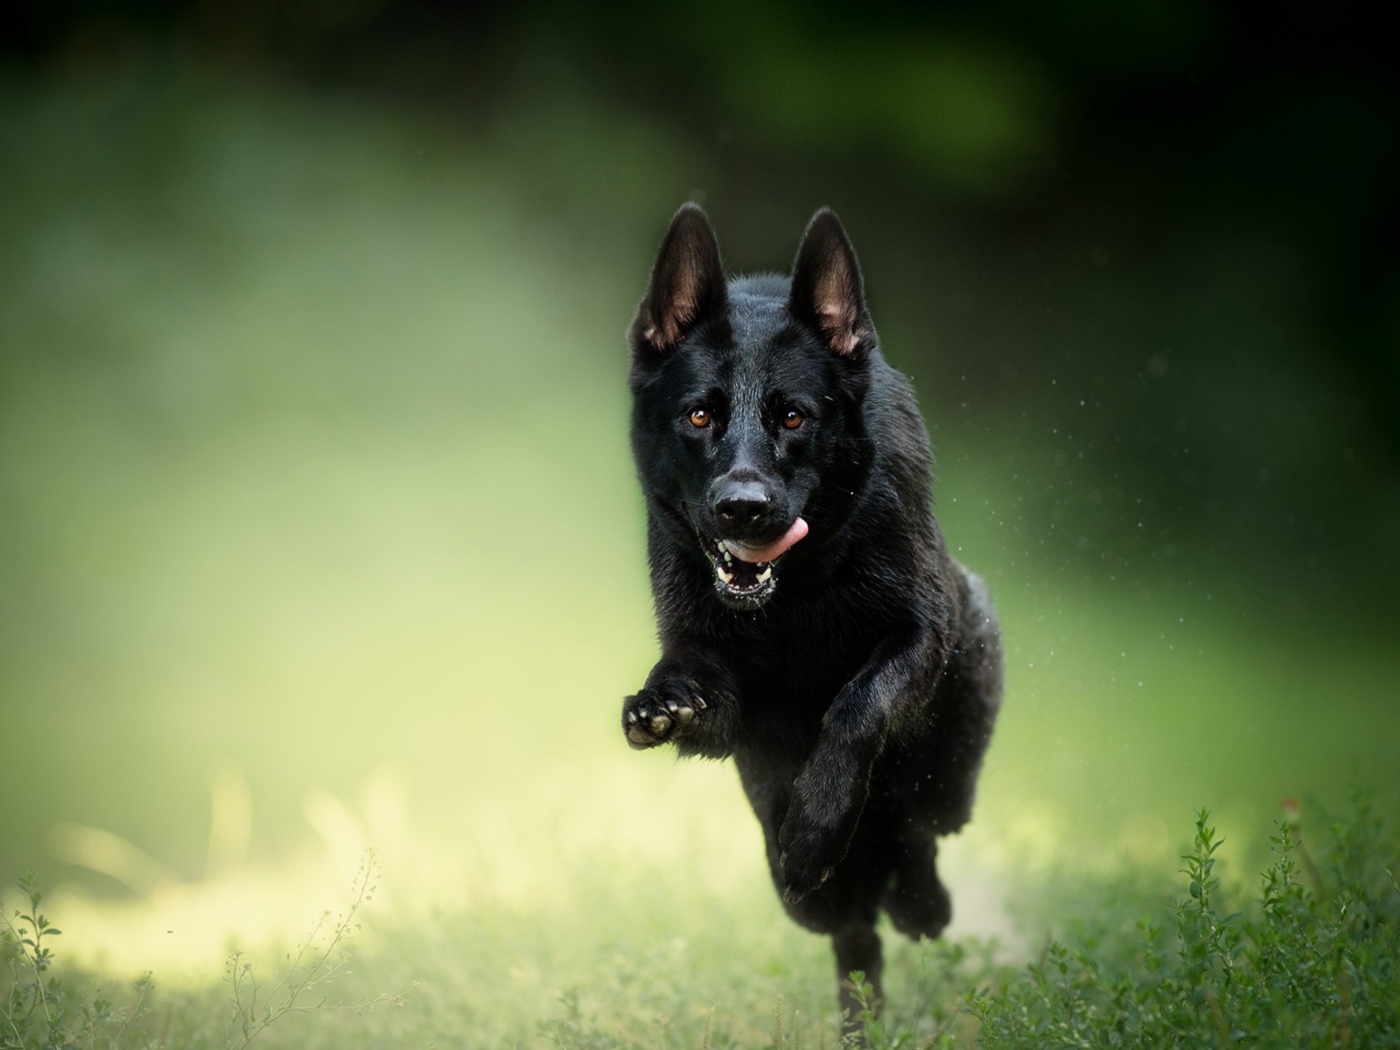 Черная овчарка бежит по траве с высунутым язык